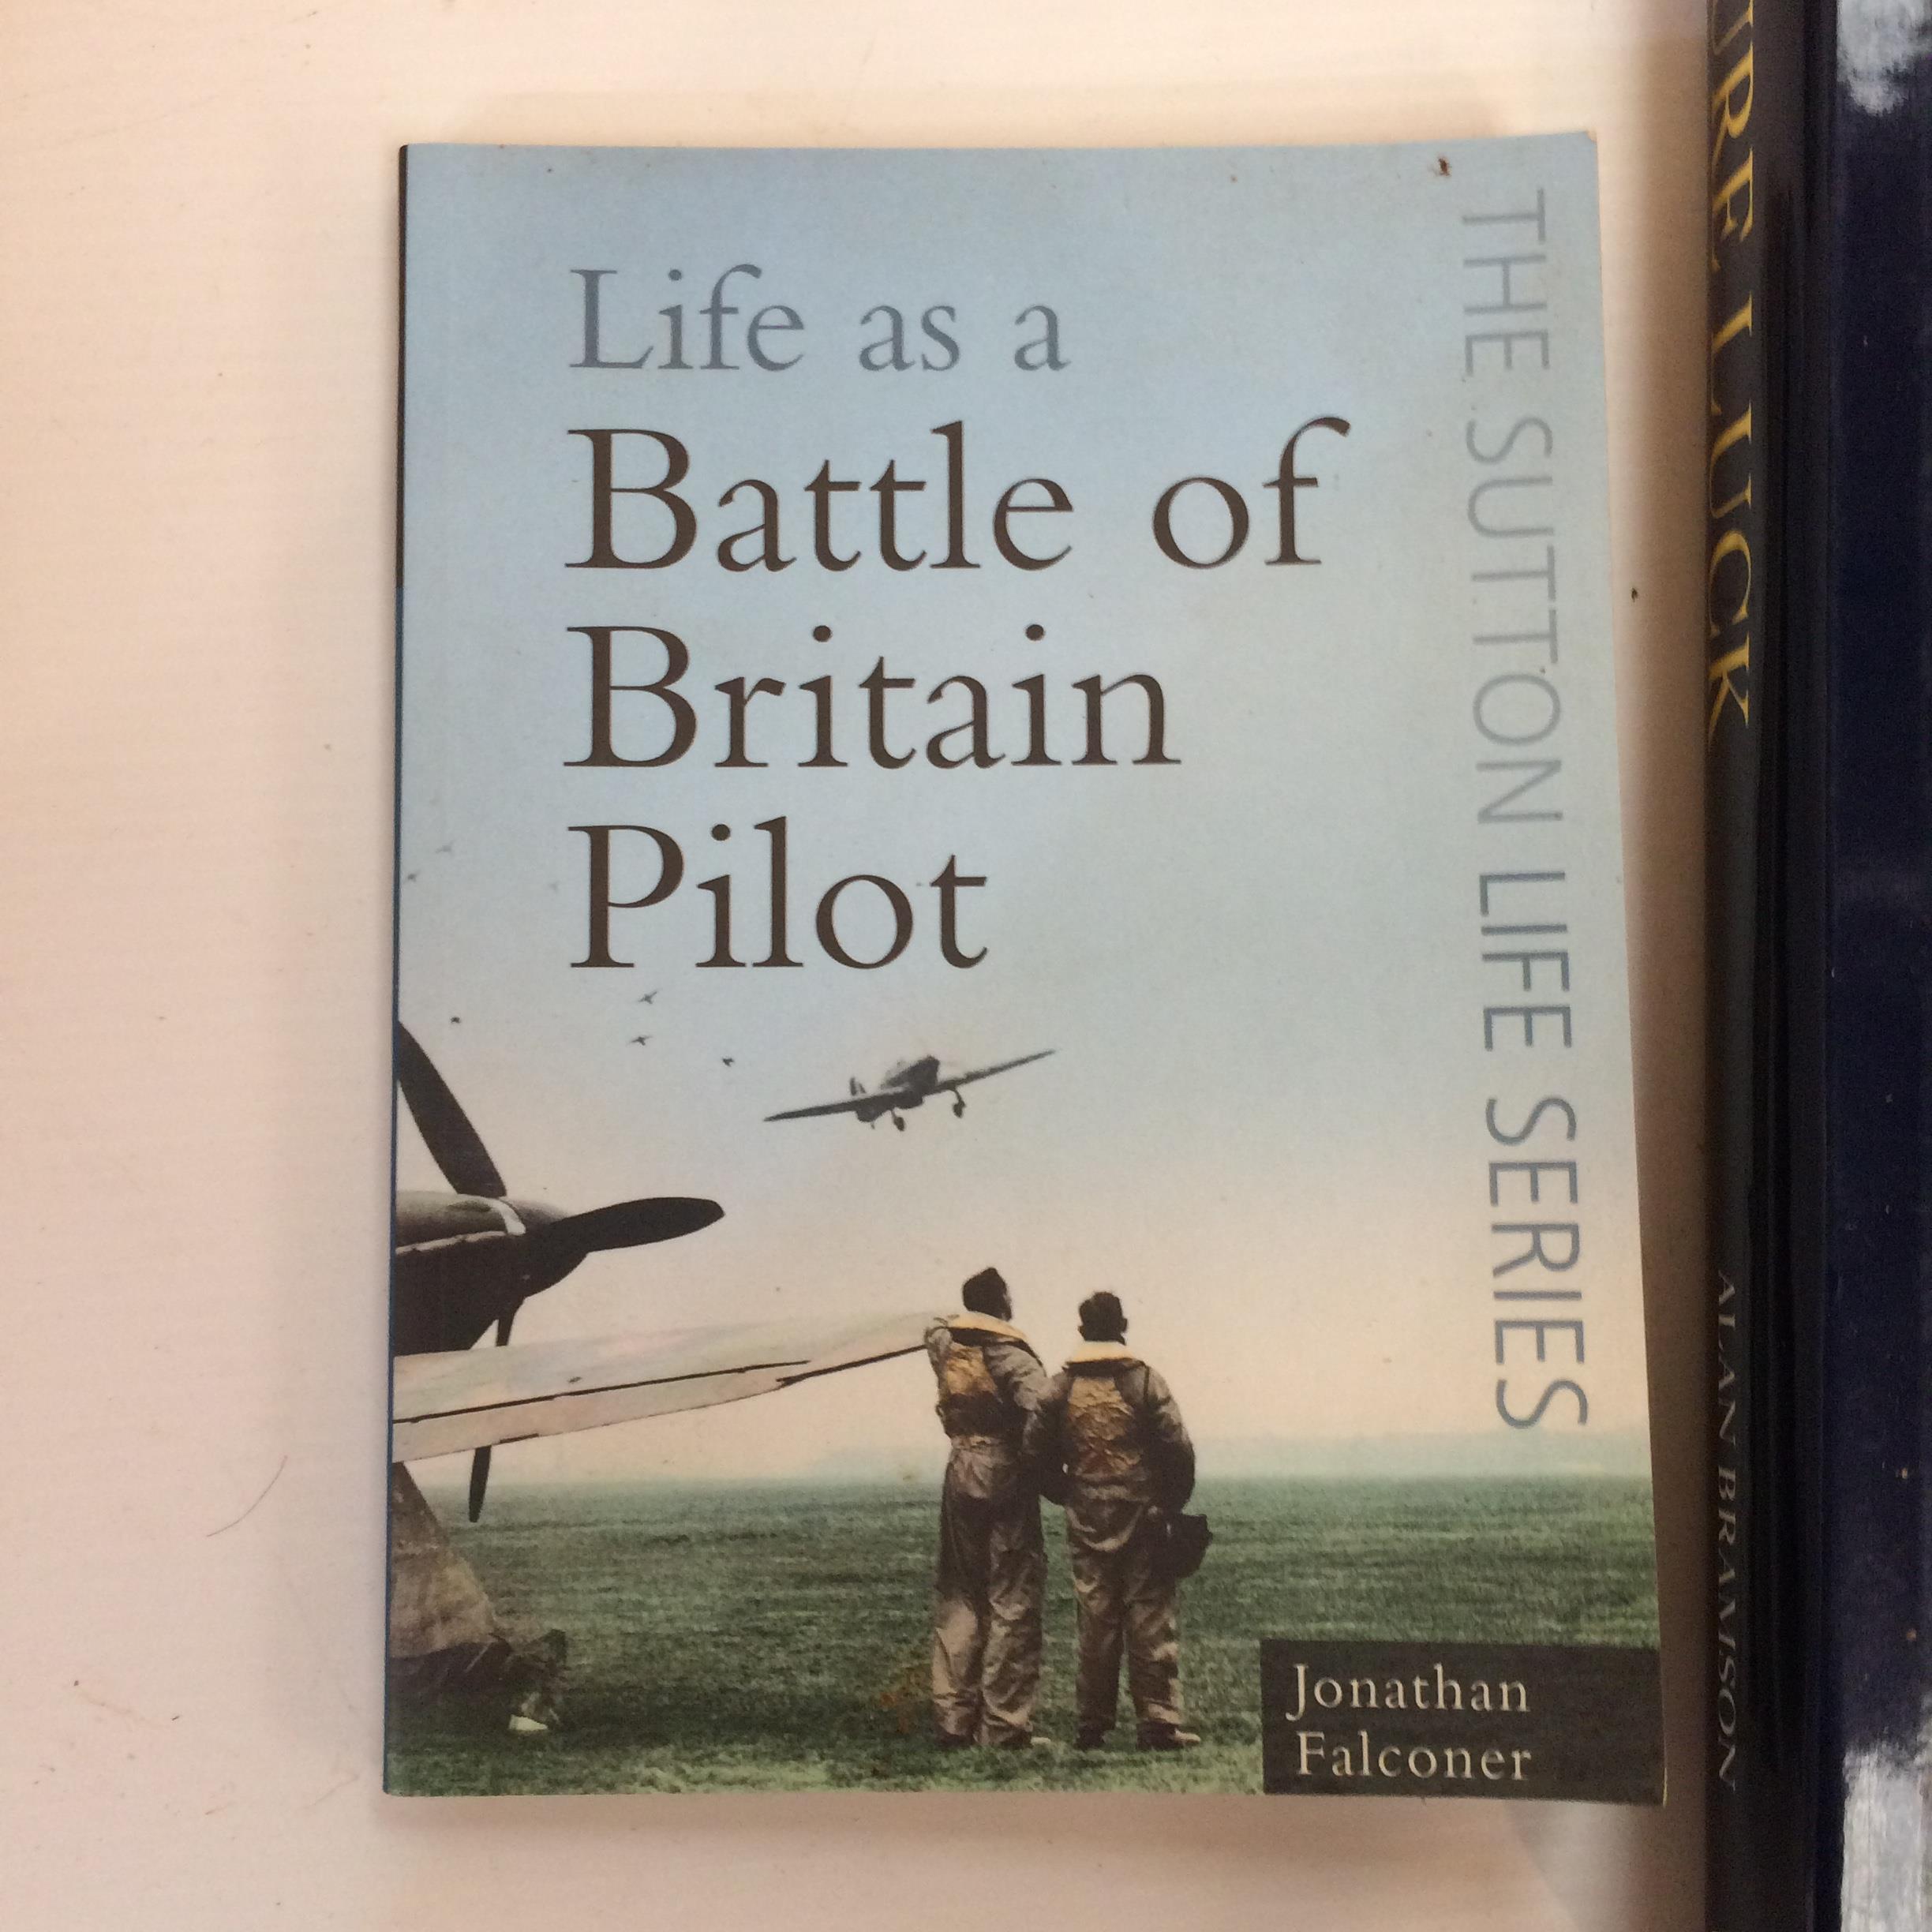 Air force memorabilia and military memorabilia , book of life as a Battle of Britain Pilot, military - Image 15 of 17